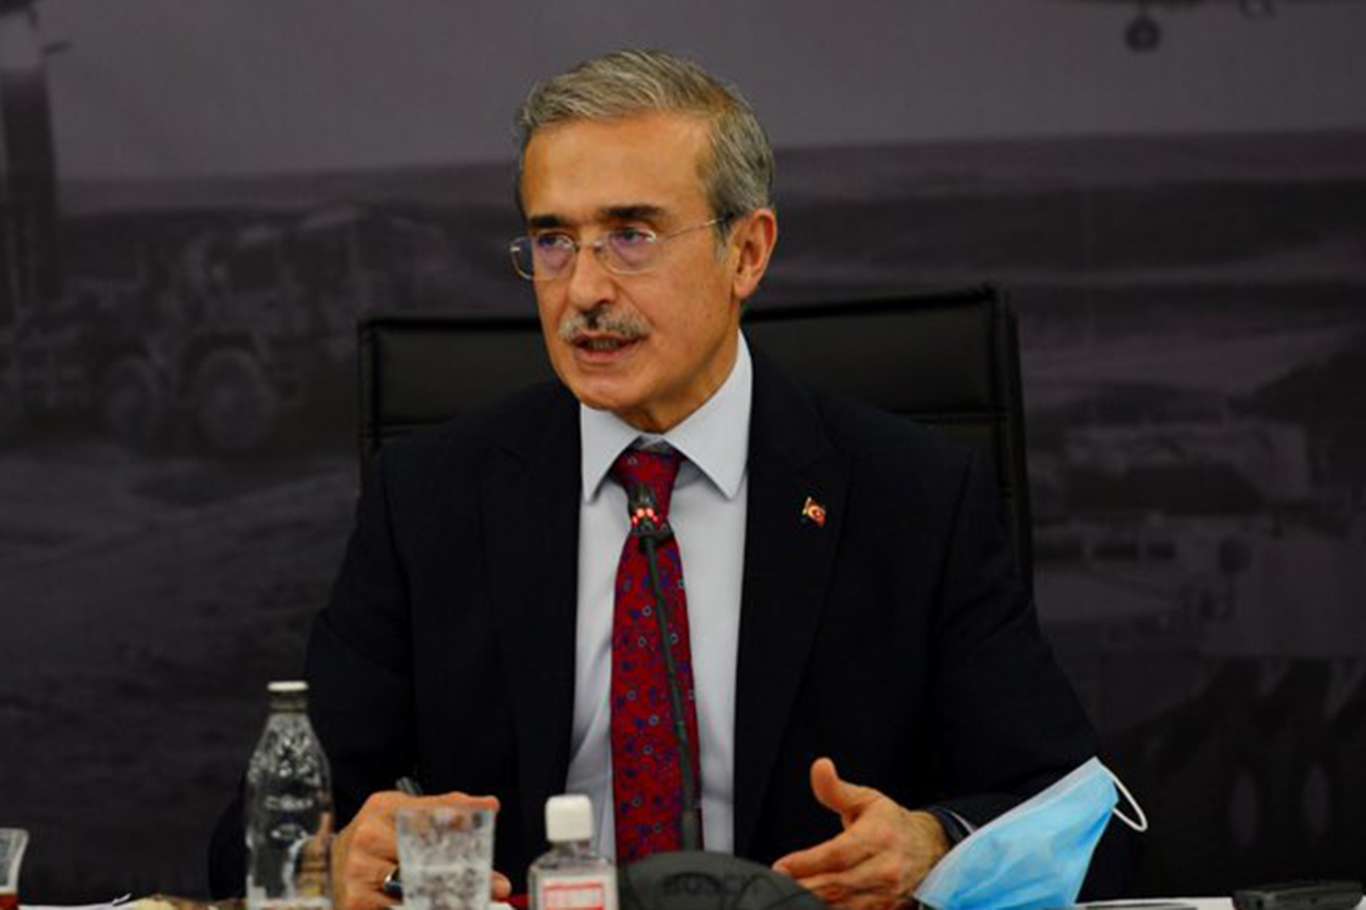 Savunma Sanayii Başkanı Demir'den "ASELSAT 3U Küp Uydusu" açıklaması